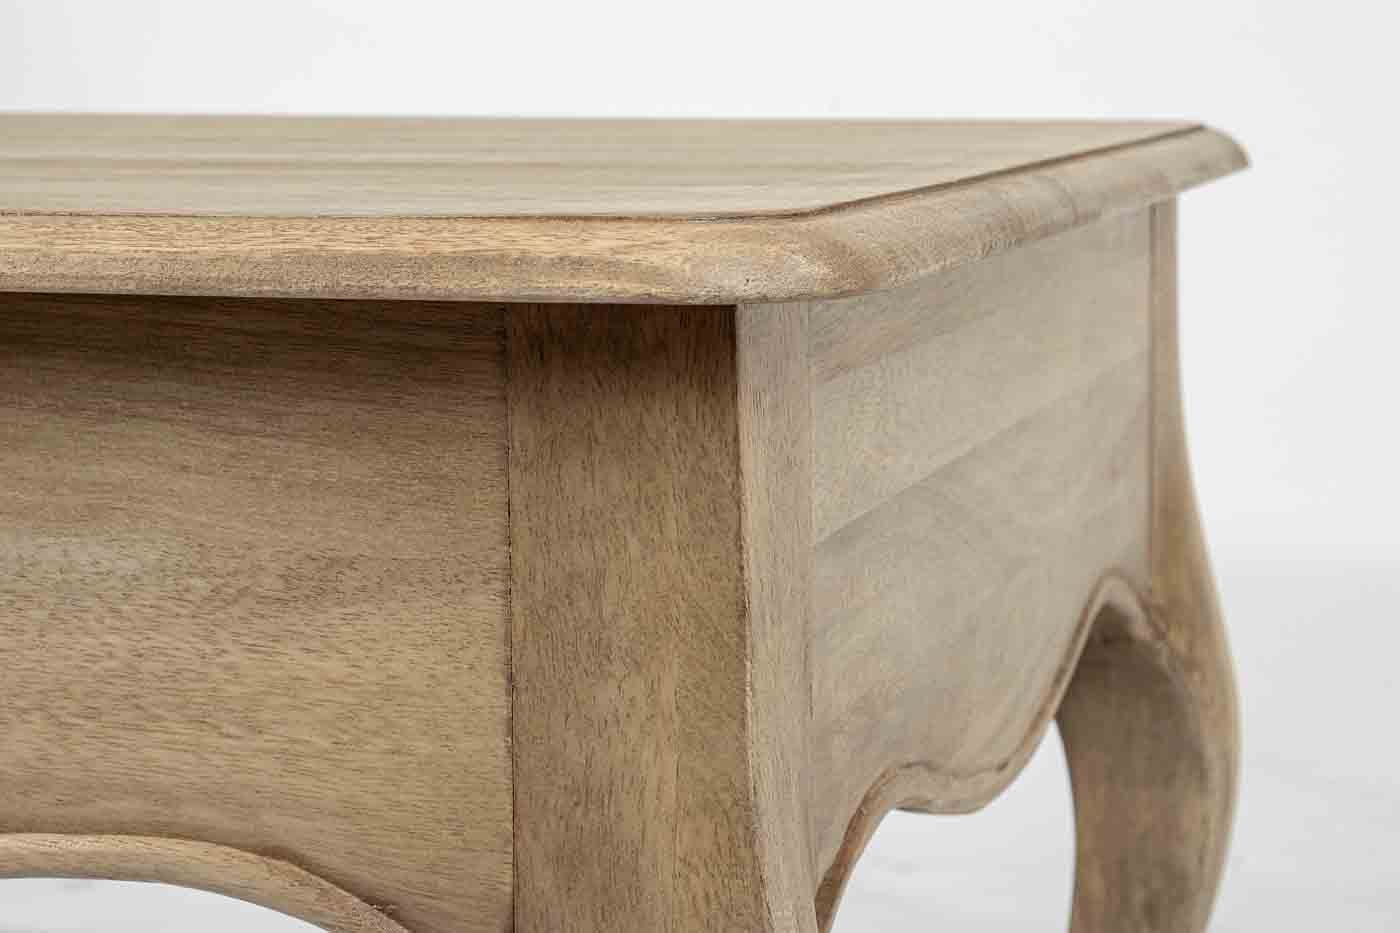 Der Beistelltisch Domitille wurde aus Mangoholz hergestellt. Der Tisch verfügt über eine Schublade für ausreichend Stauraum.